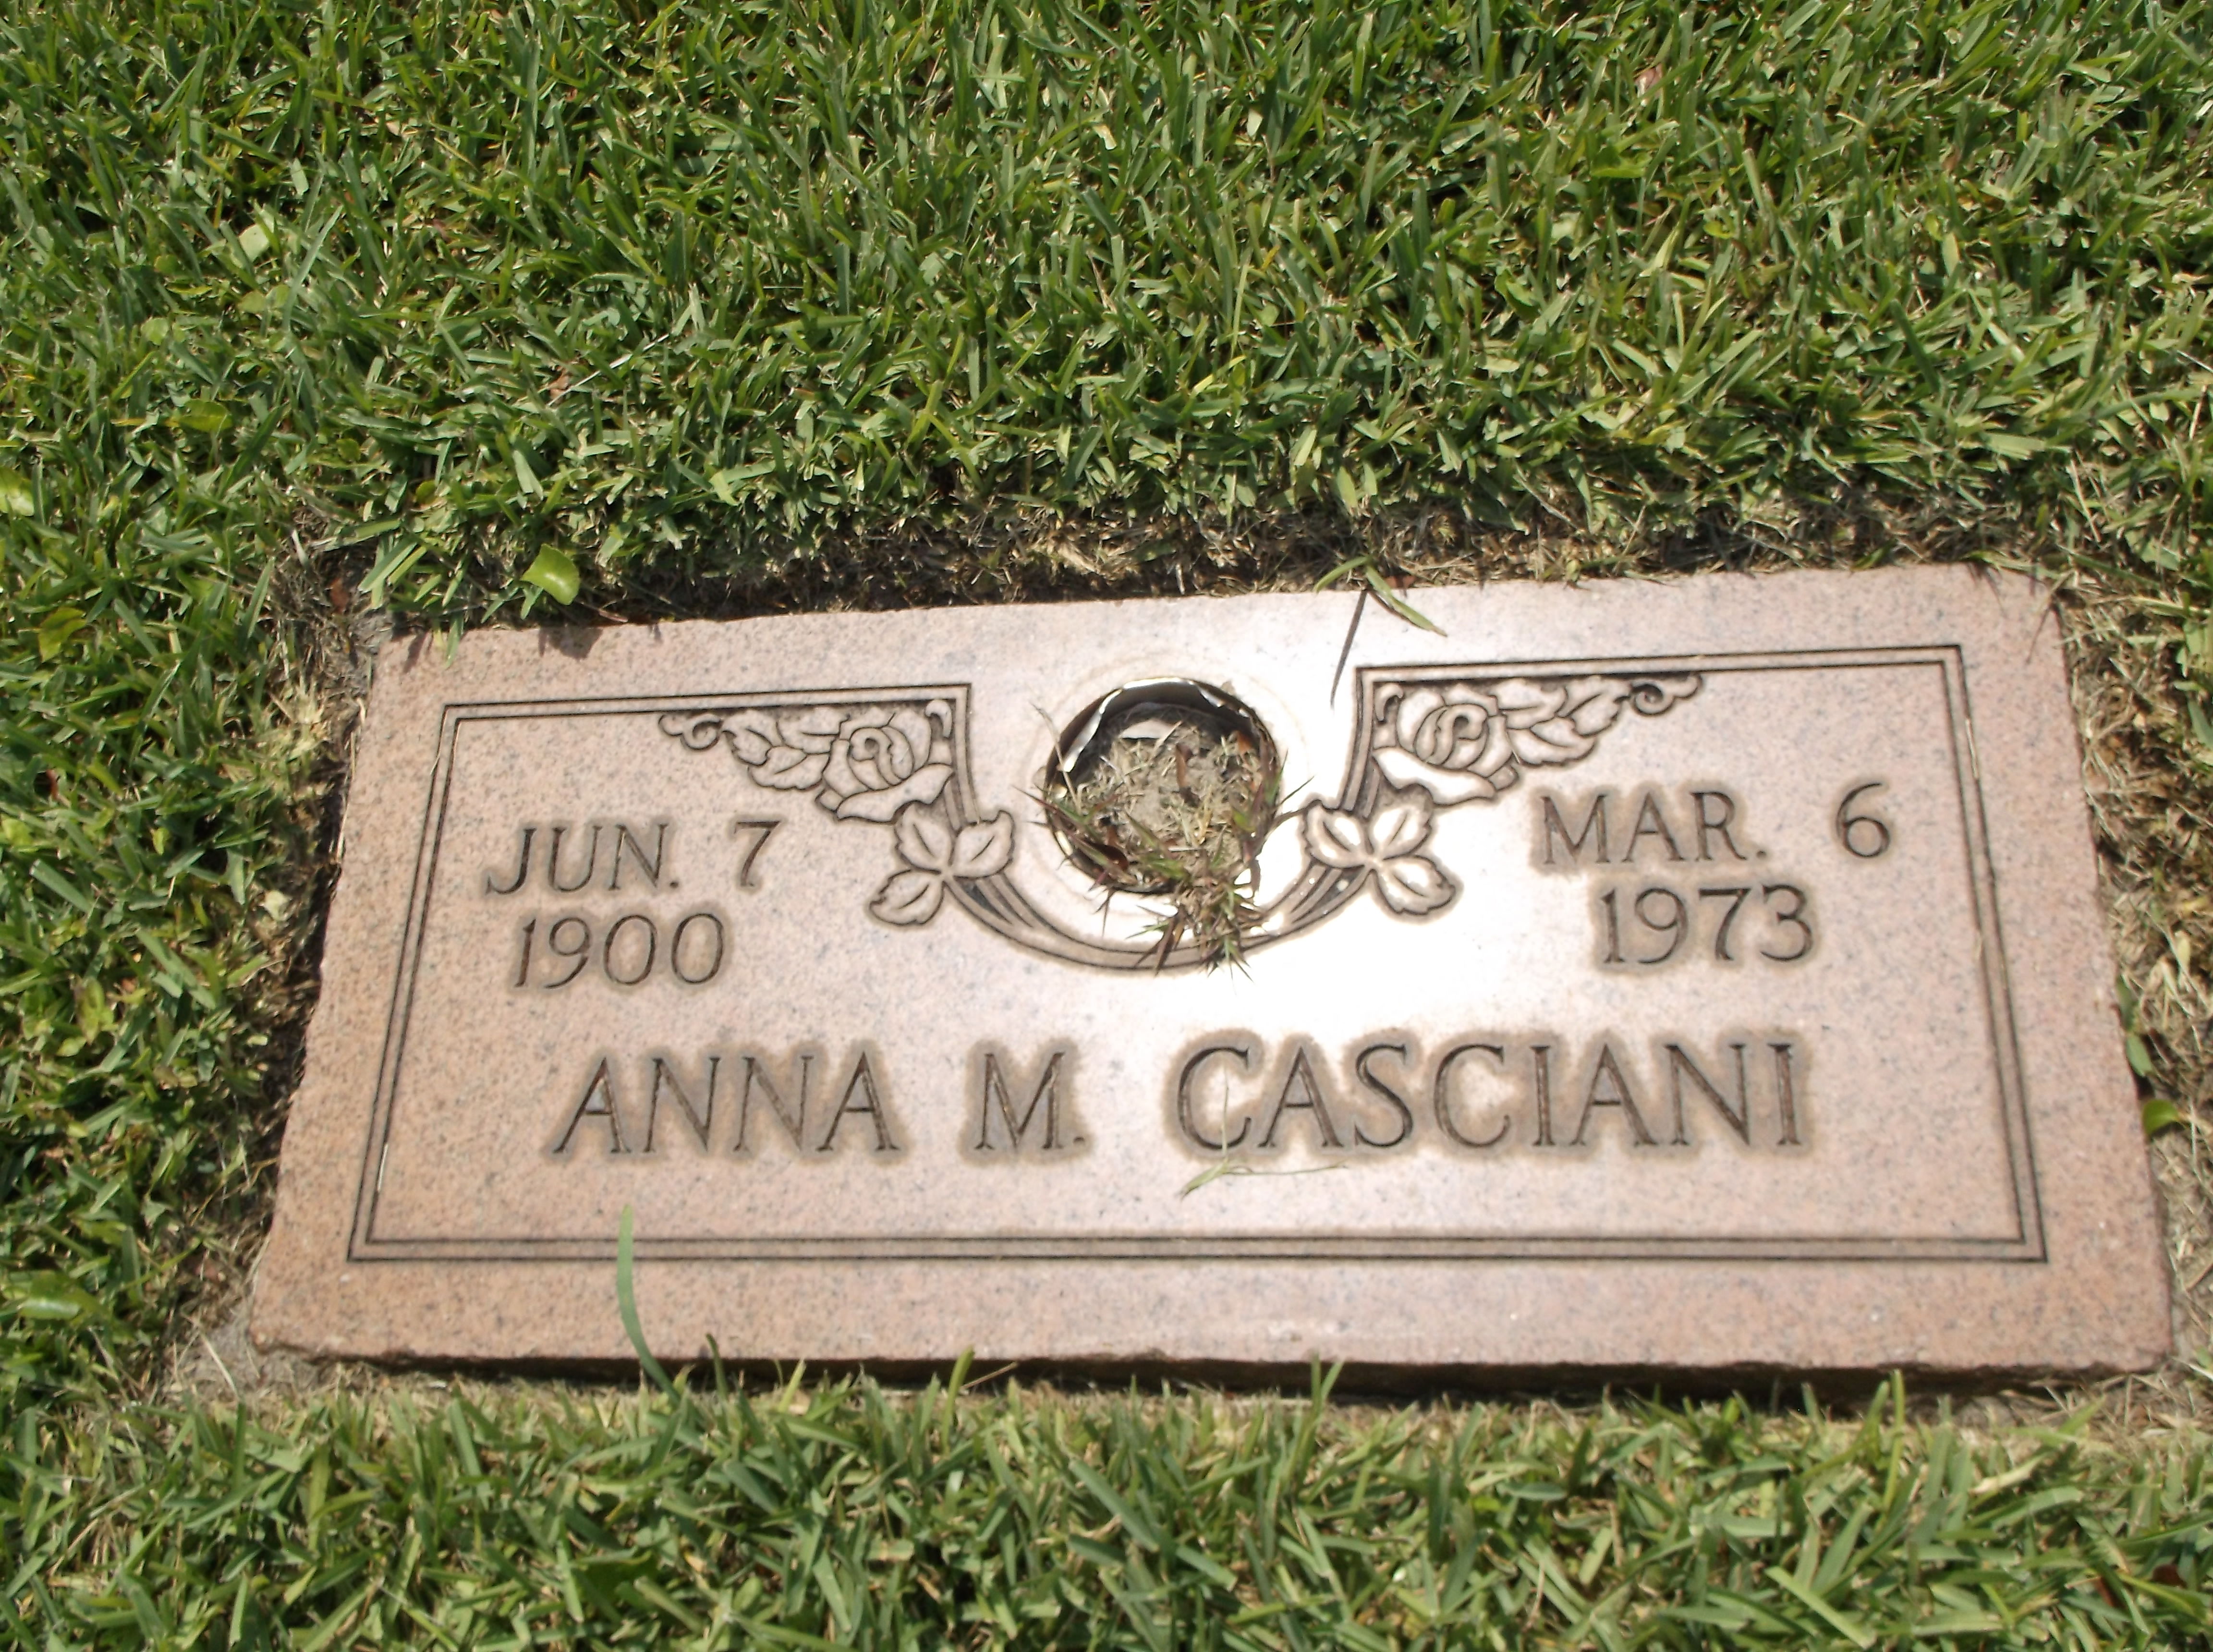 Anna M Casciani